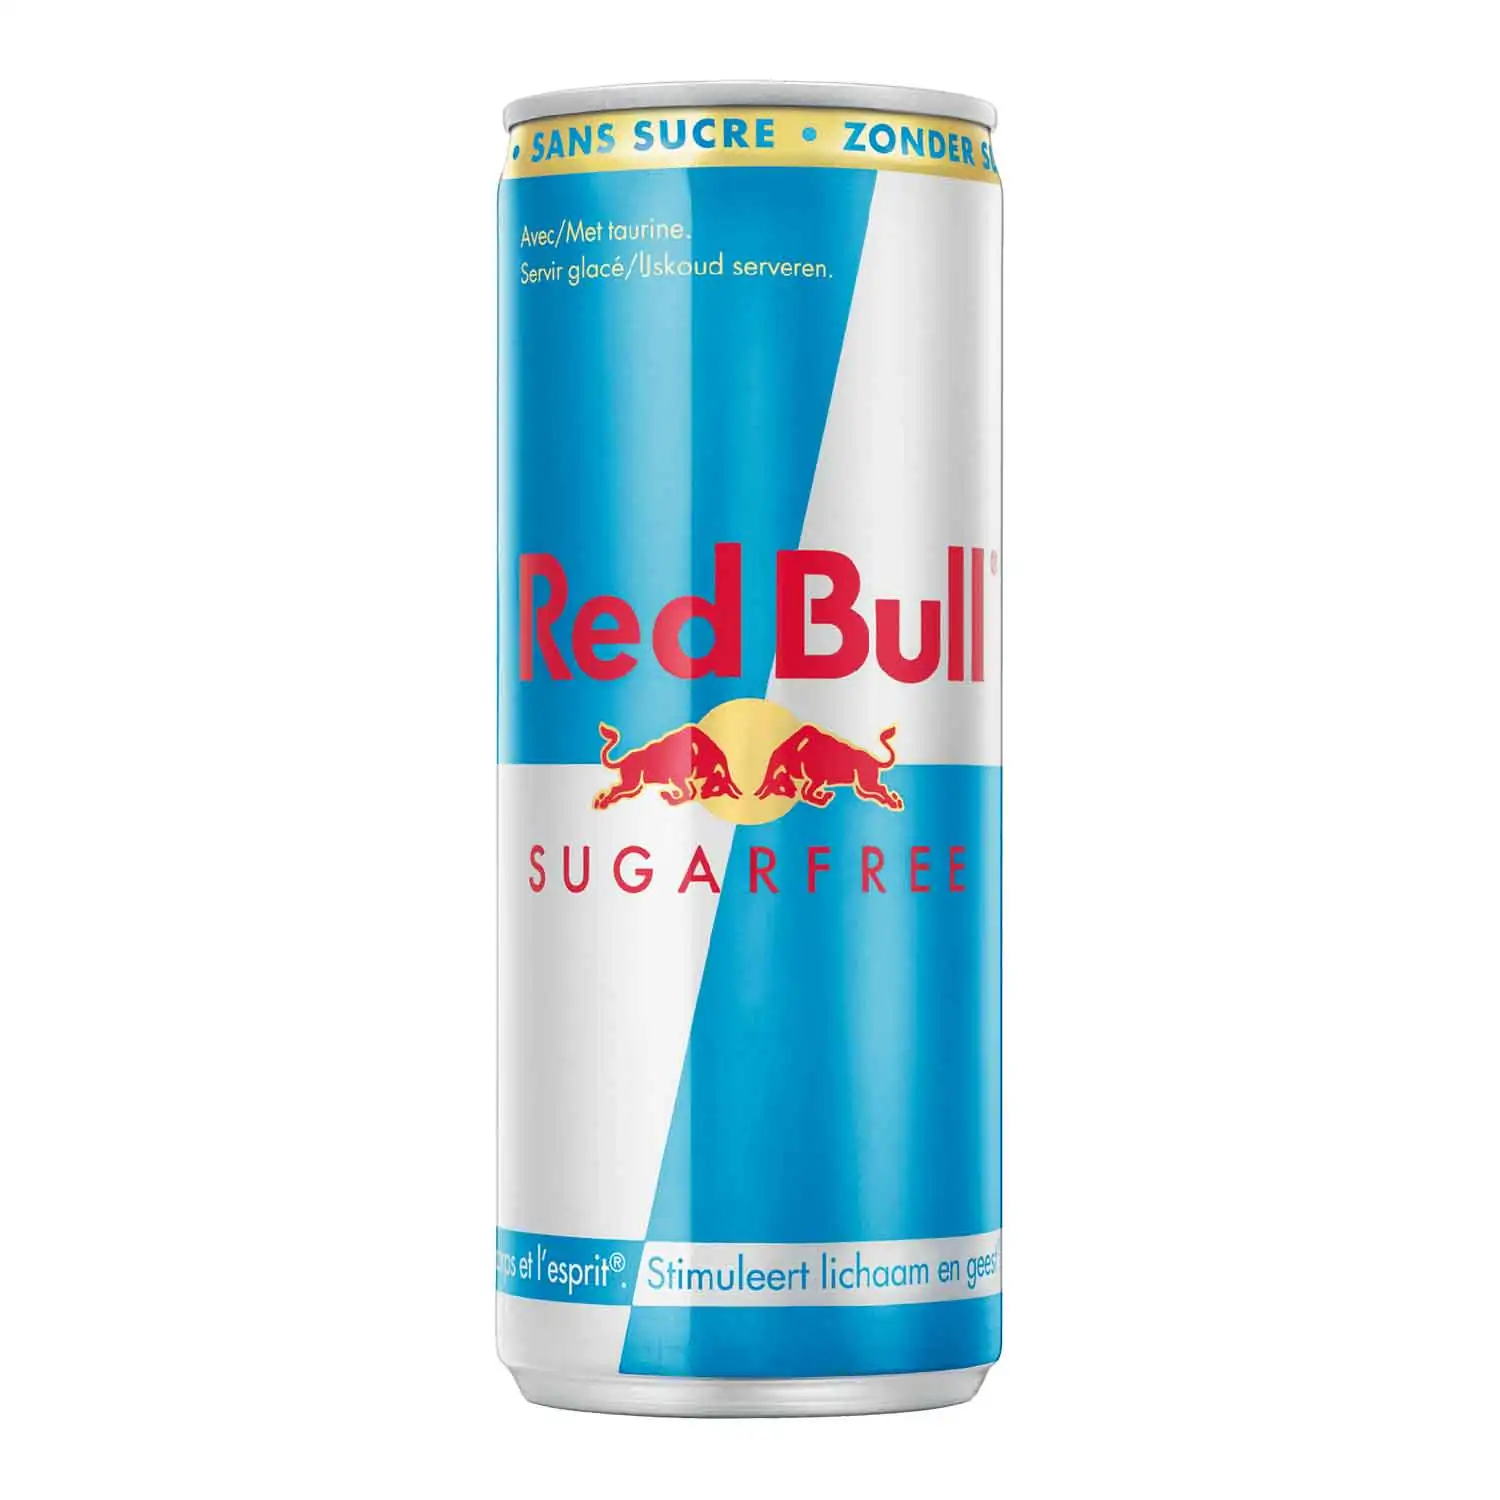 Red Bull sugarfree 25cl - Buy at Real Tobacco